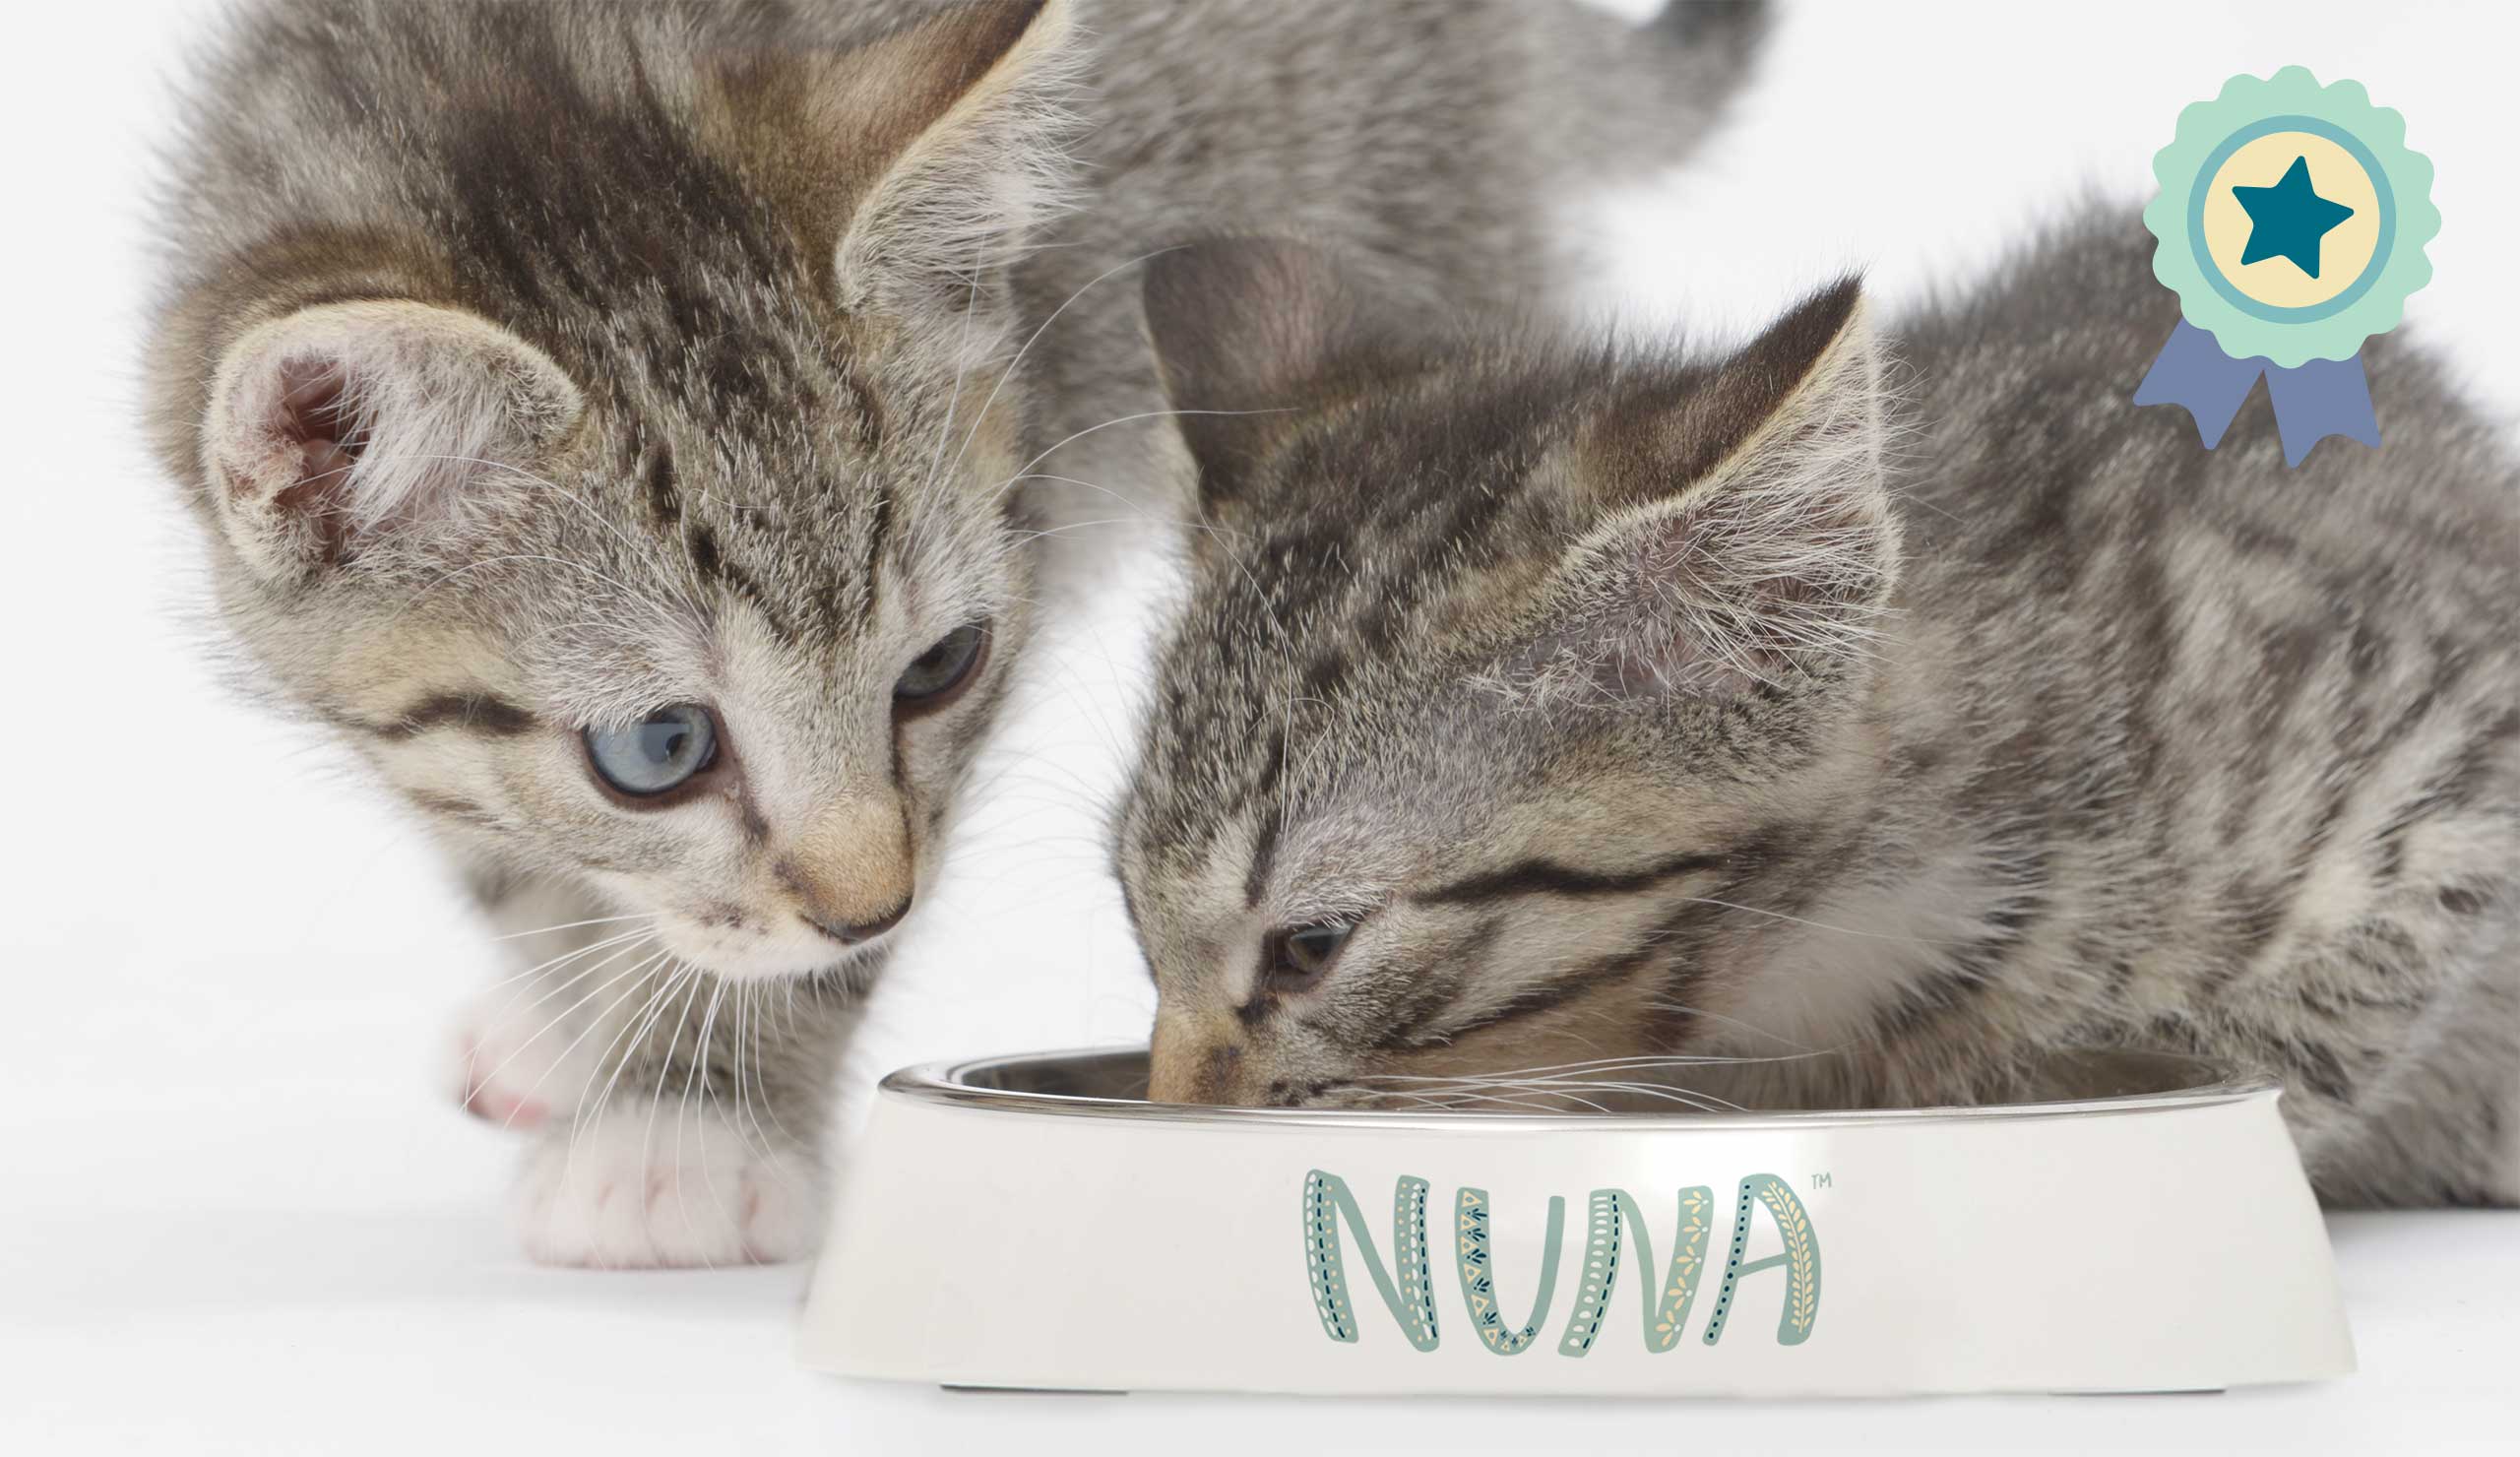 Les recettes Nuna sont gagnantes au test de goût selon notre jury de chats